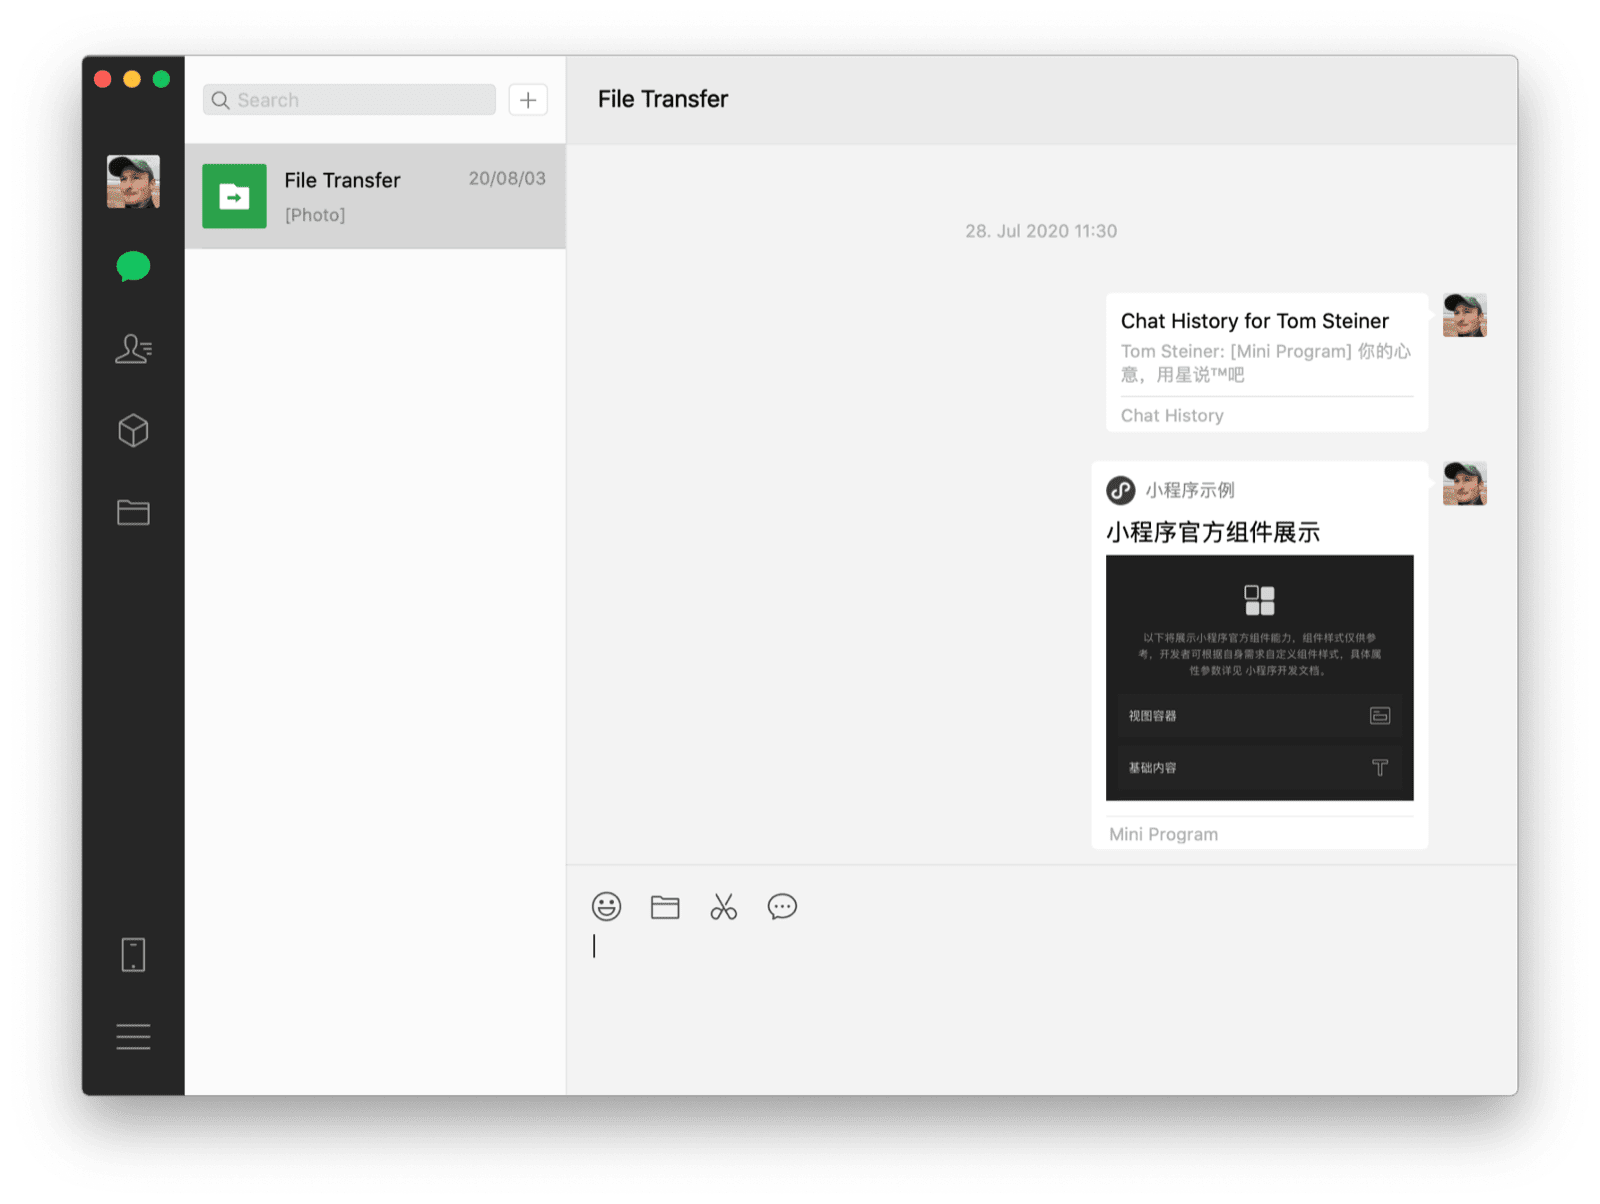 El cliente de escritorio de macOS de WeChat muestra un chat contigo mismo con una miniapp compartida y un historial de chat como los dos mensajes visibles.